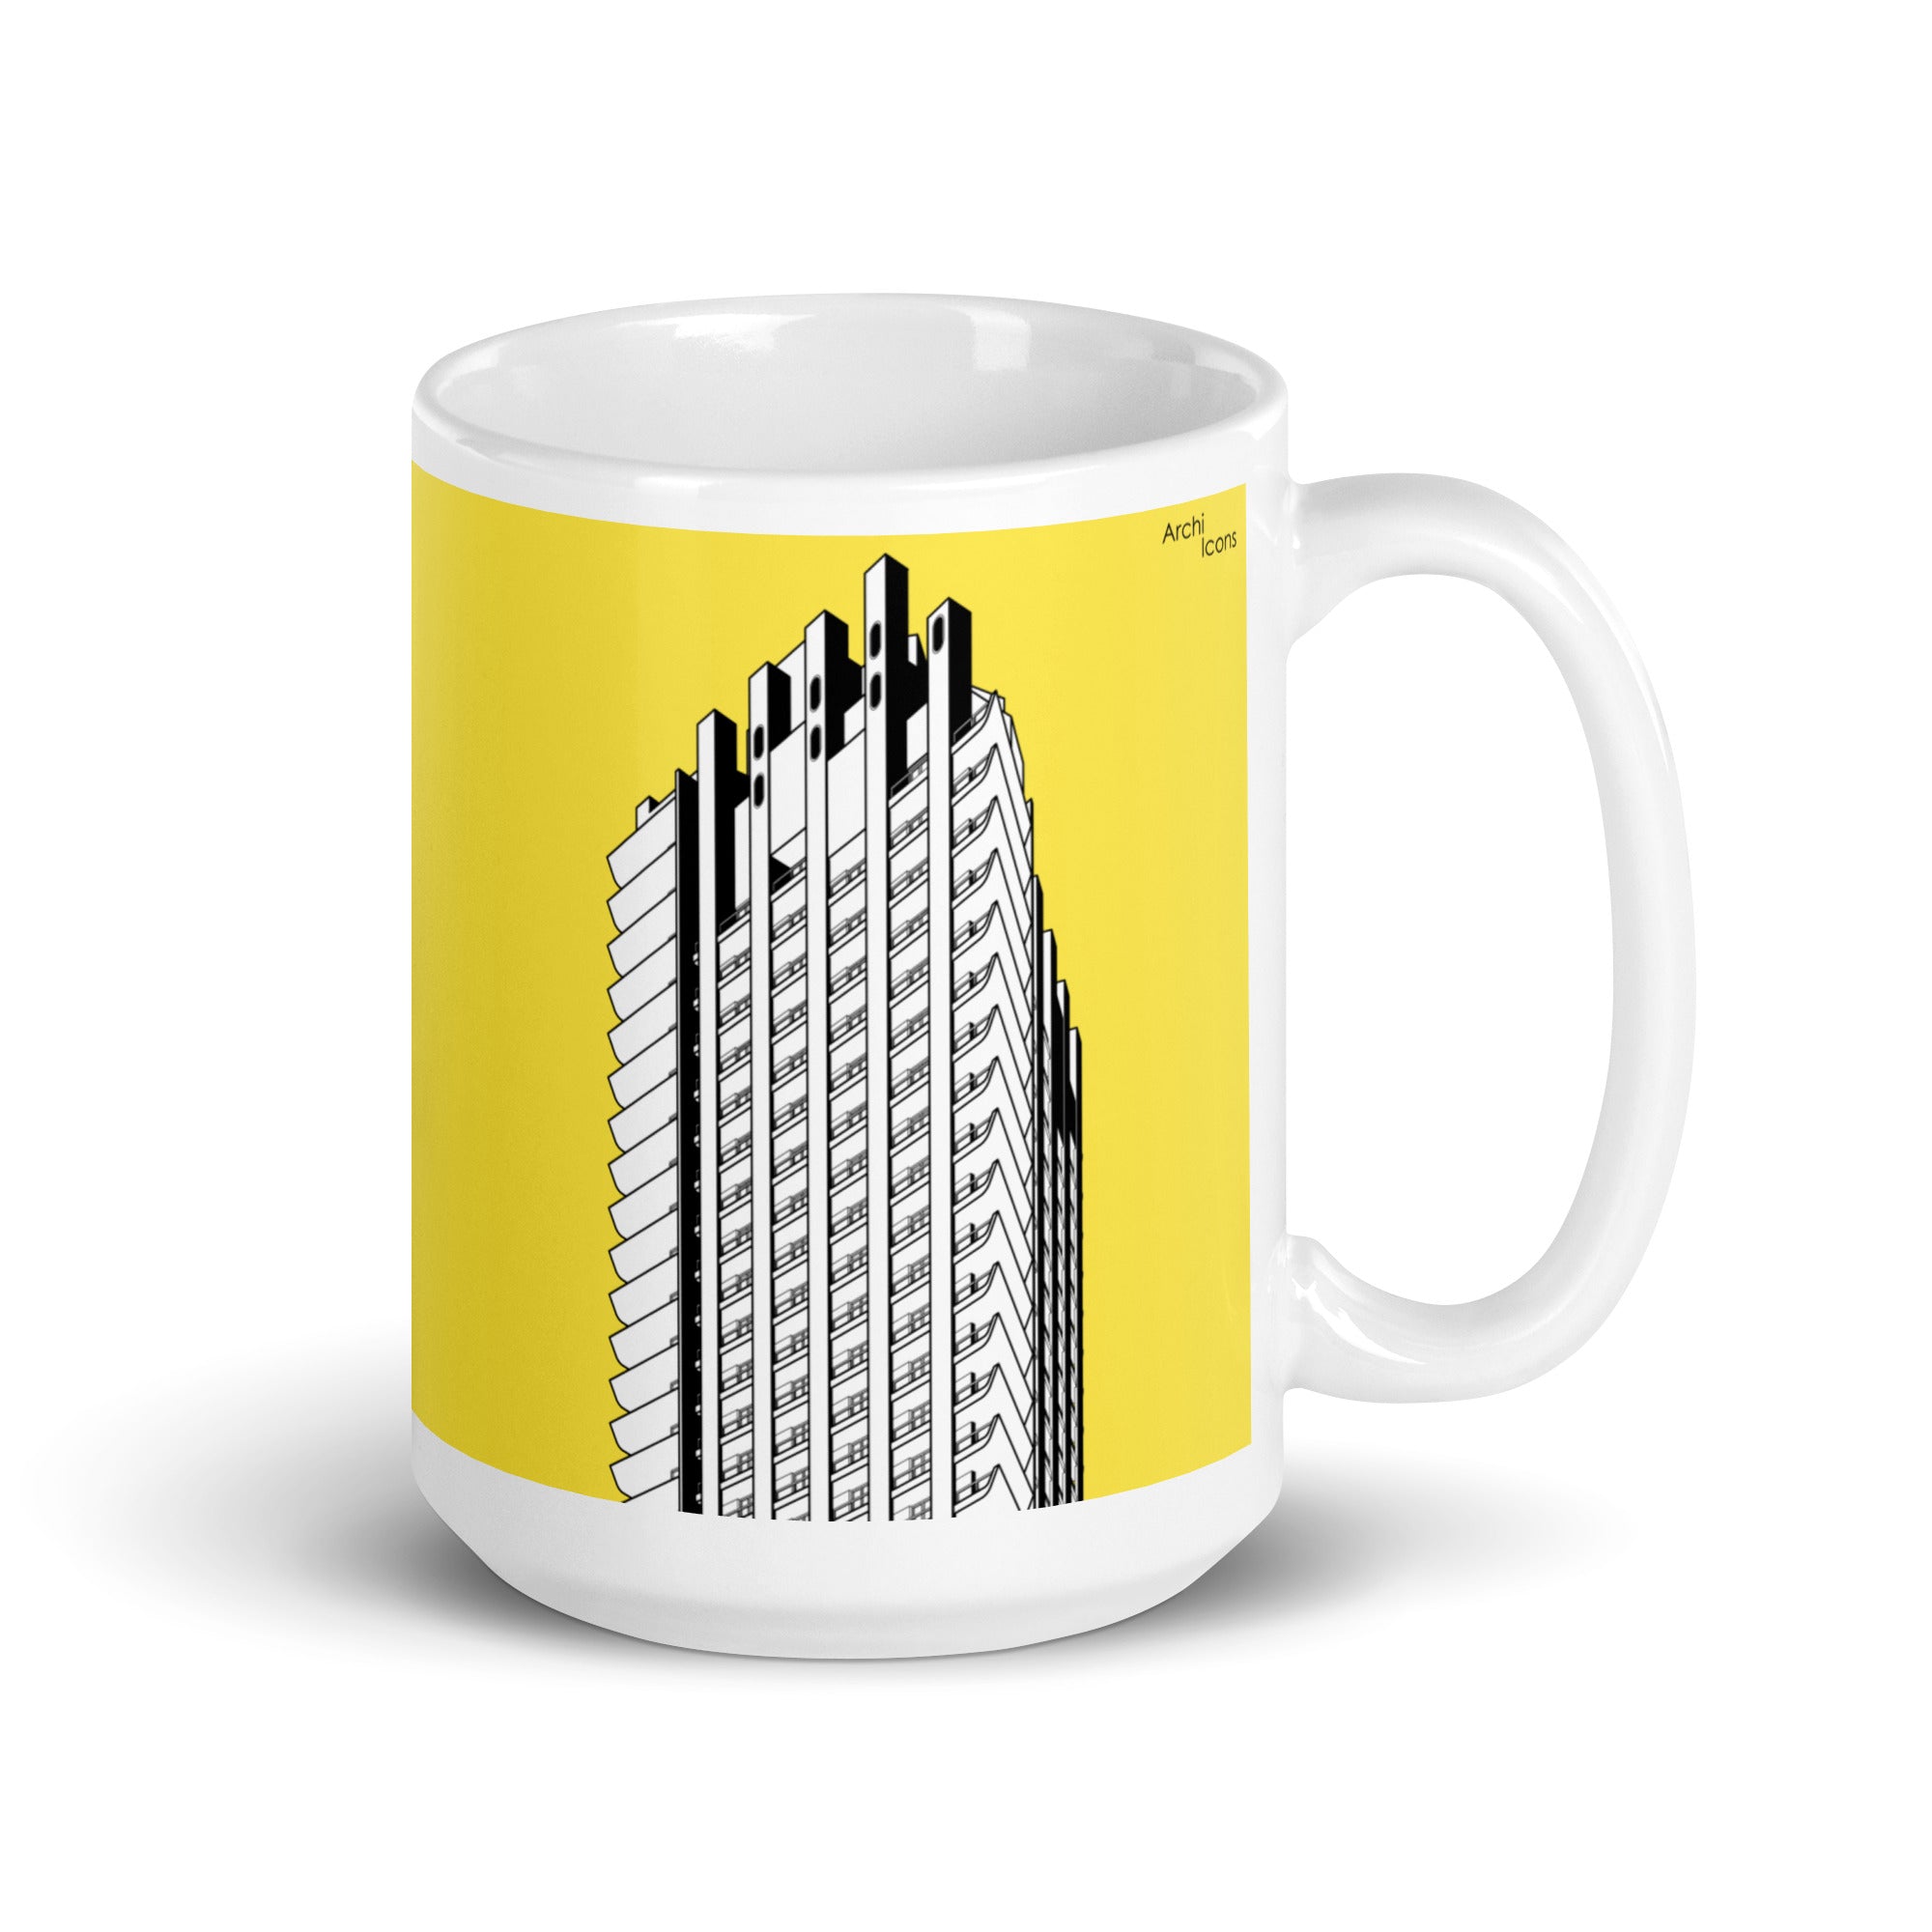 Barbican Yellow Mugs